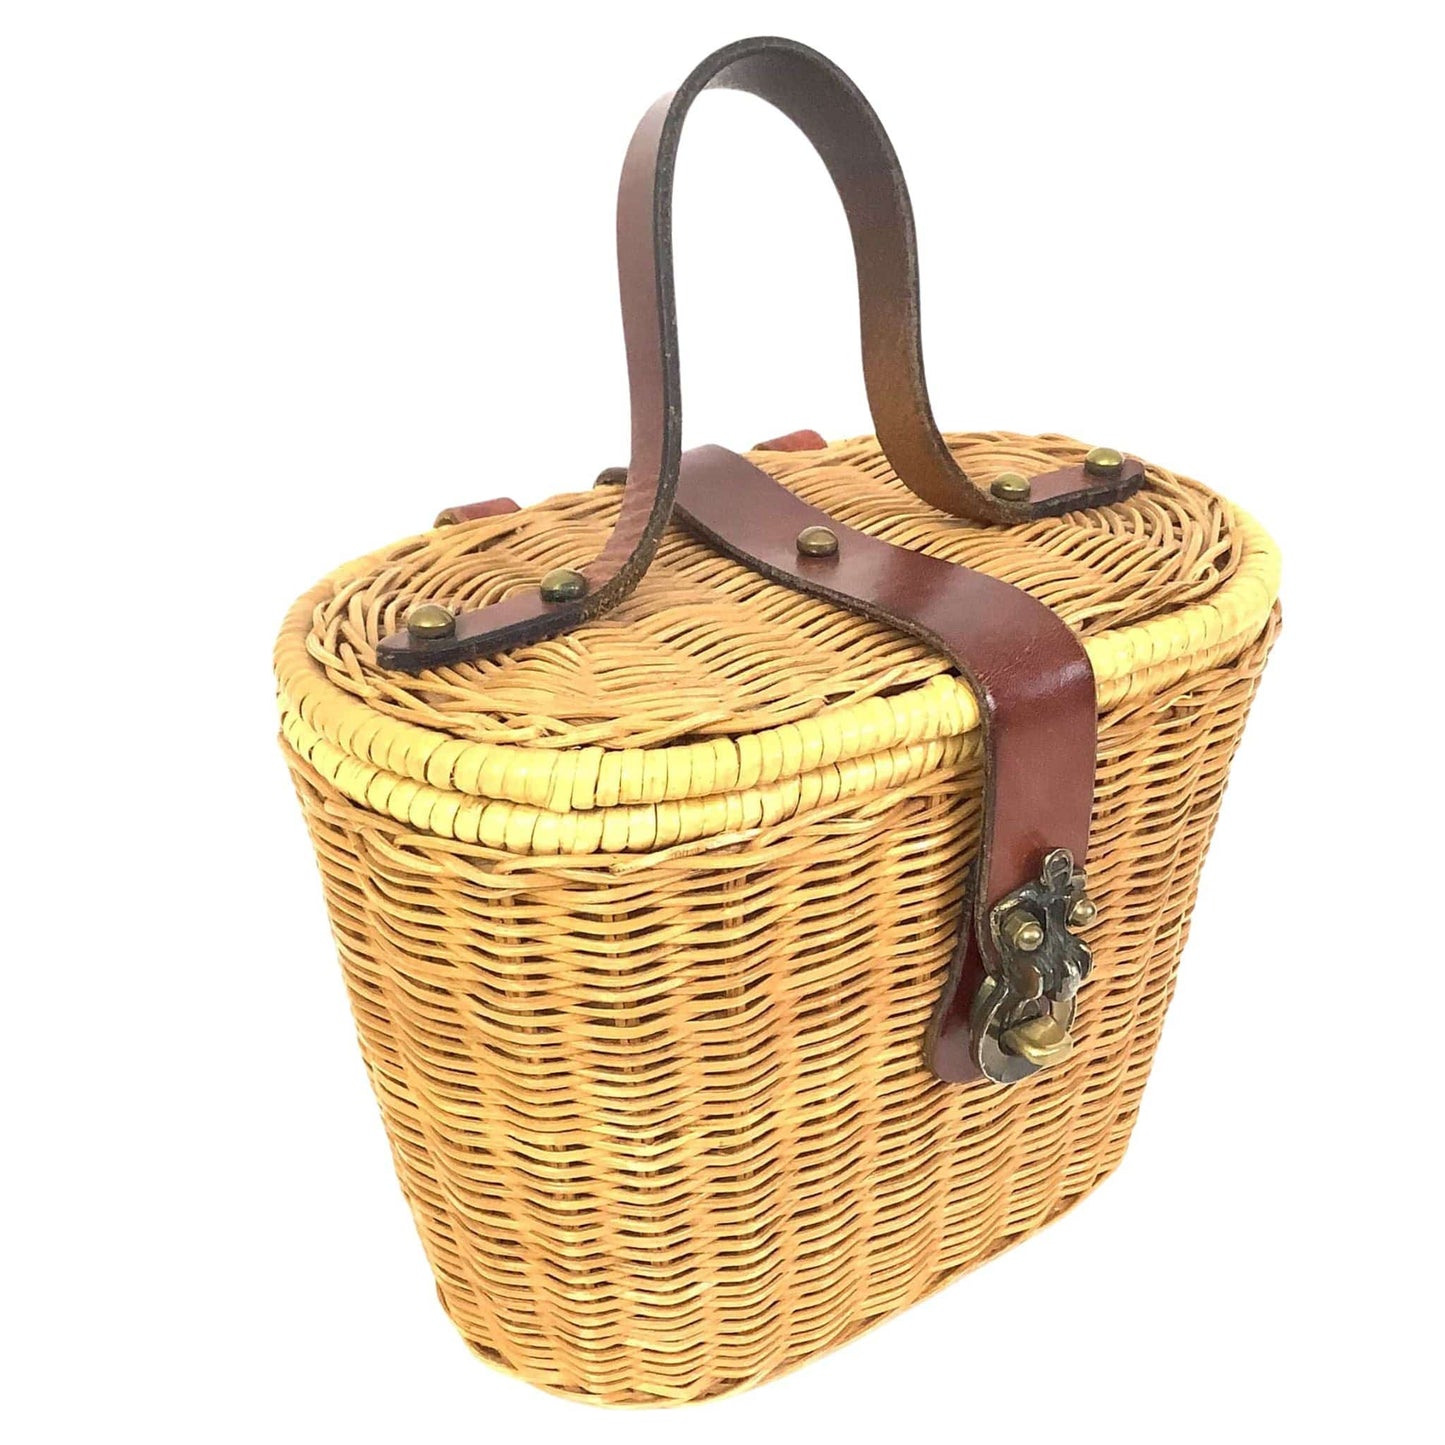 Vintage Aigner Basket Bag Natural / Natural Fibers / Vintage 1960s